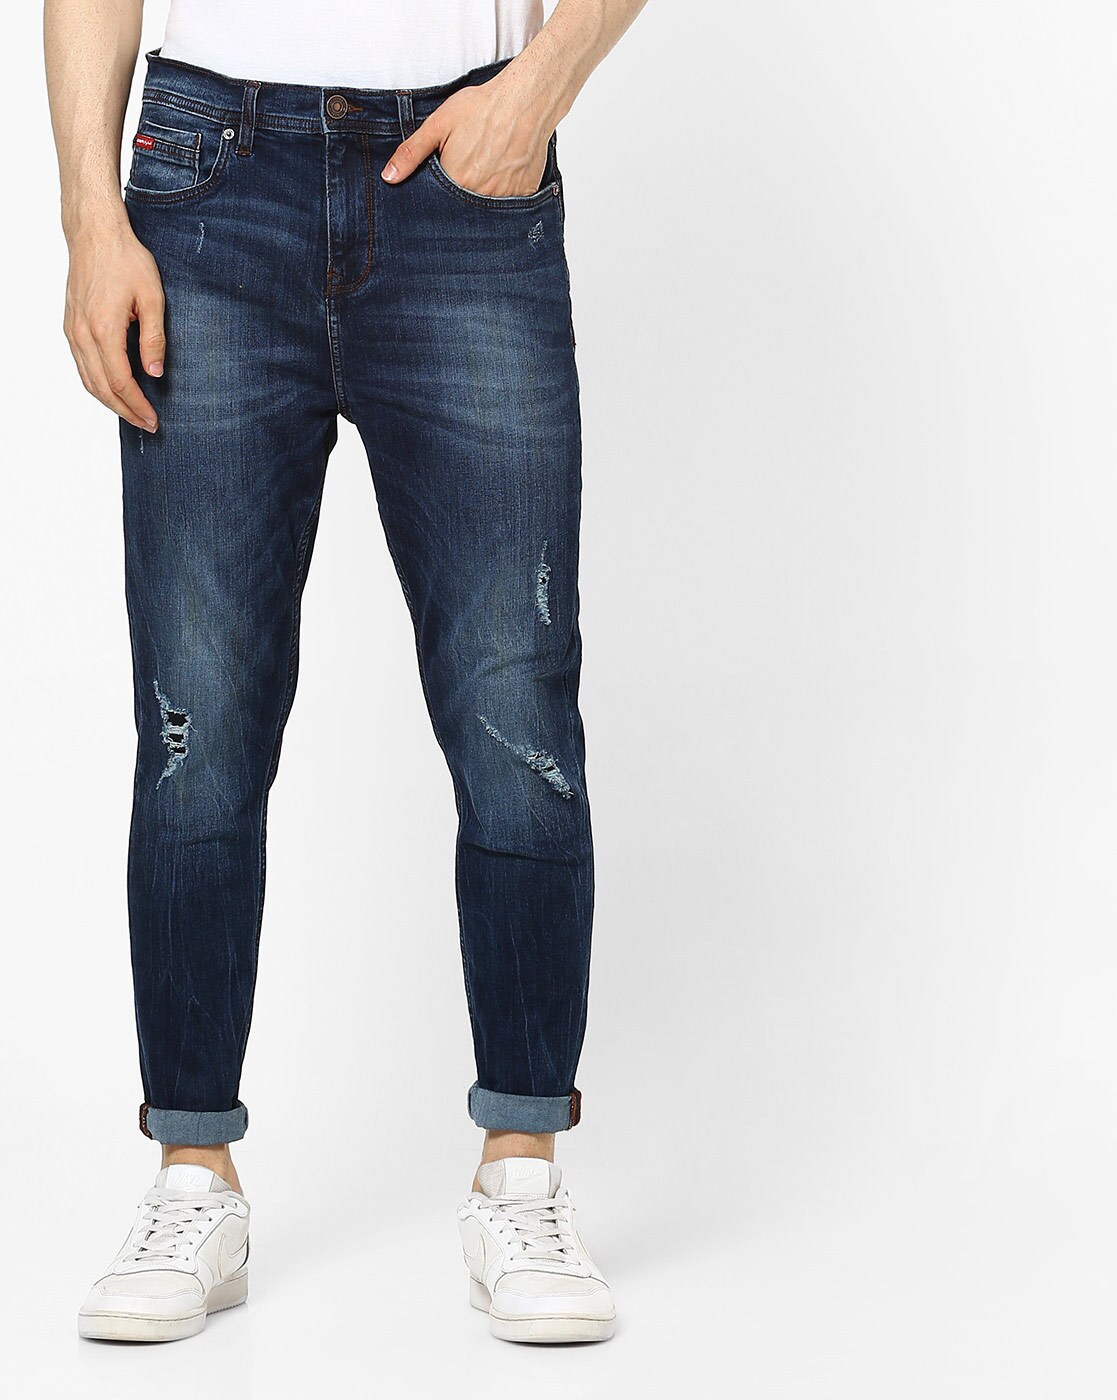 buy lee cooper jeans online